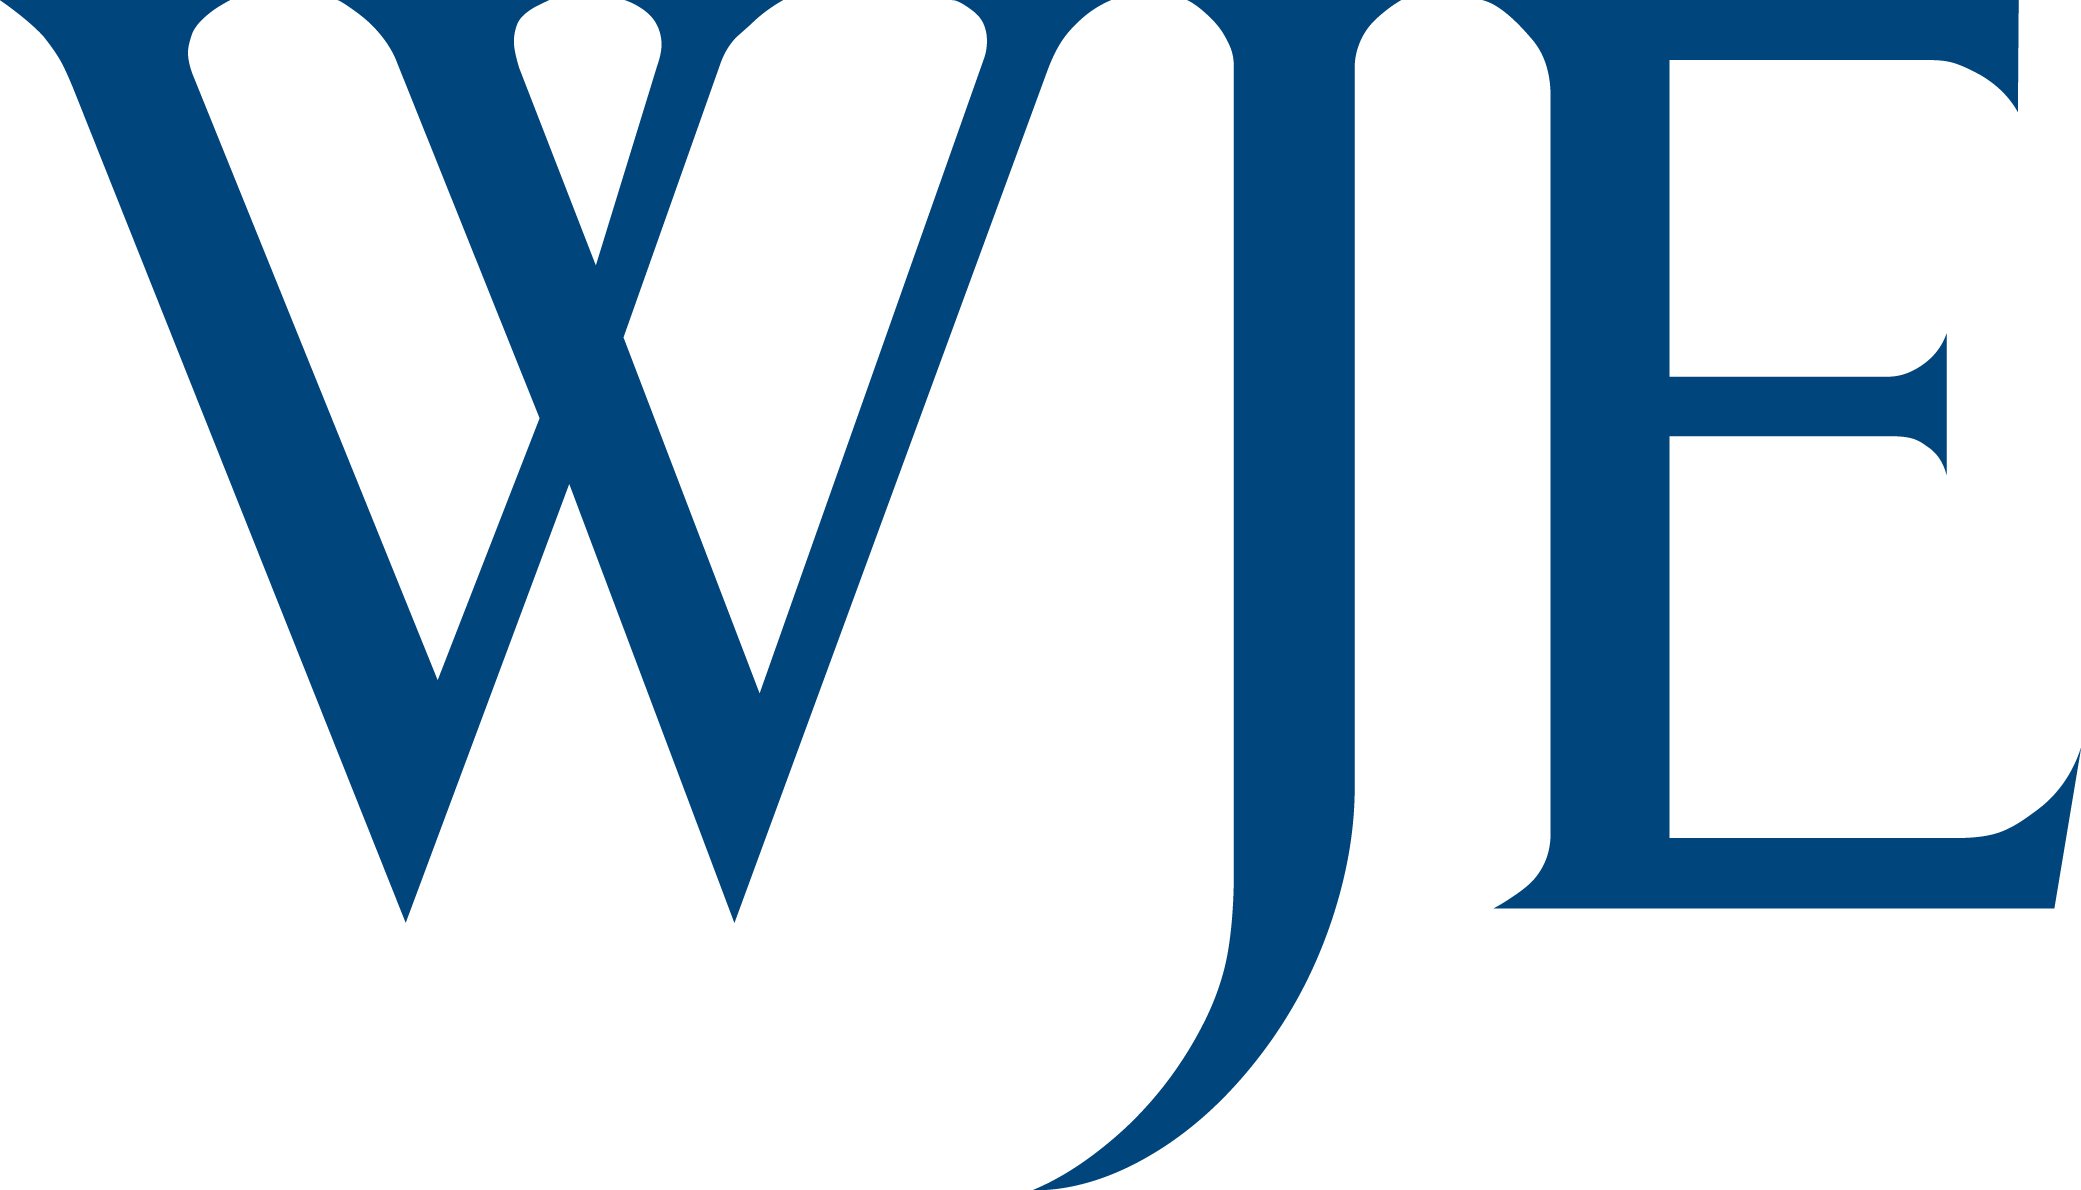 Wiss, Janney, Elstner Associates (WJE)